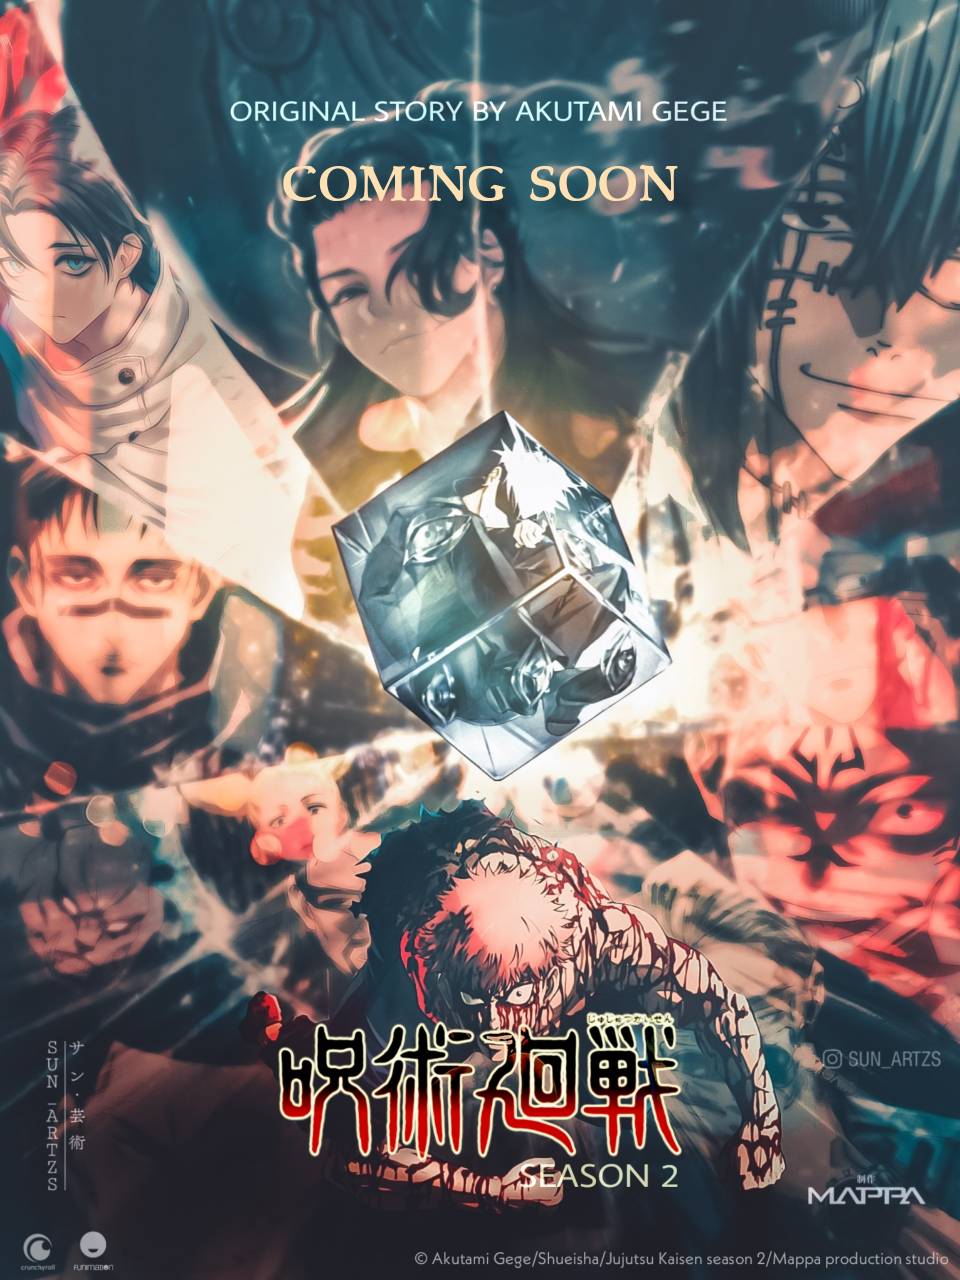 Jujutsu Kaisen season 2 poster by sunartzs on DeviantArt